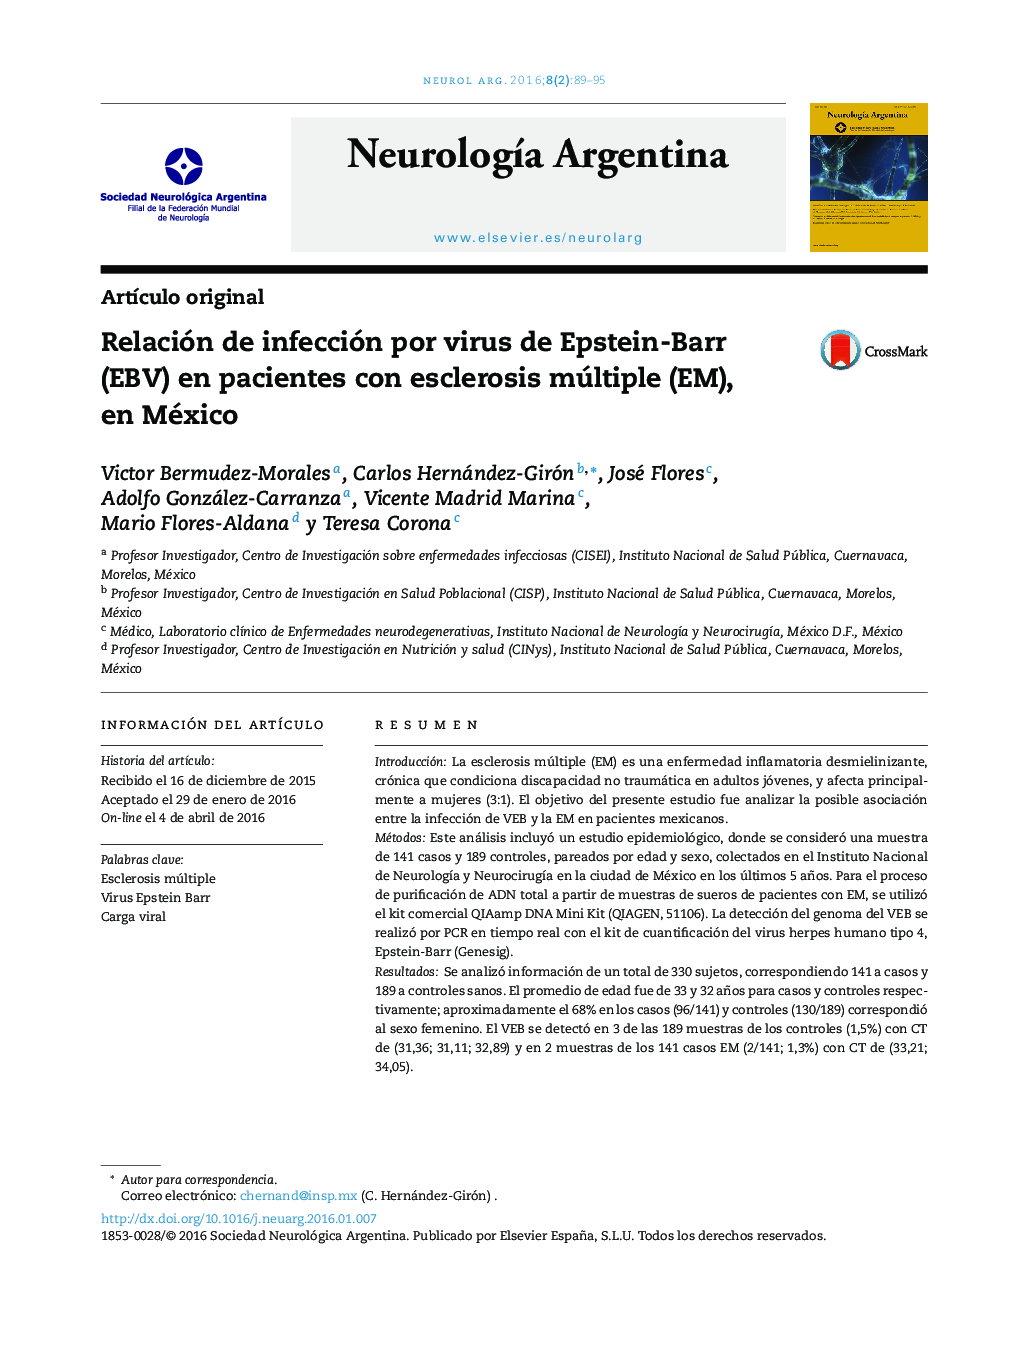 Relación de infección por virus de Epstein-Barr (EBV) en pacientes con esclerosis múltiple (EM), en México